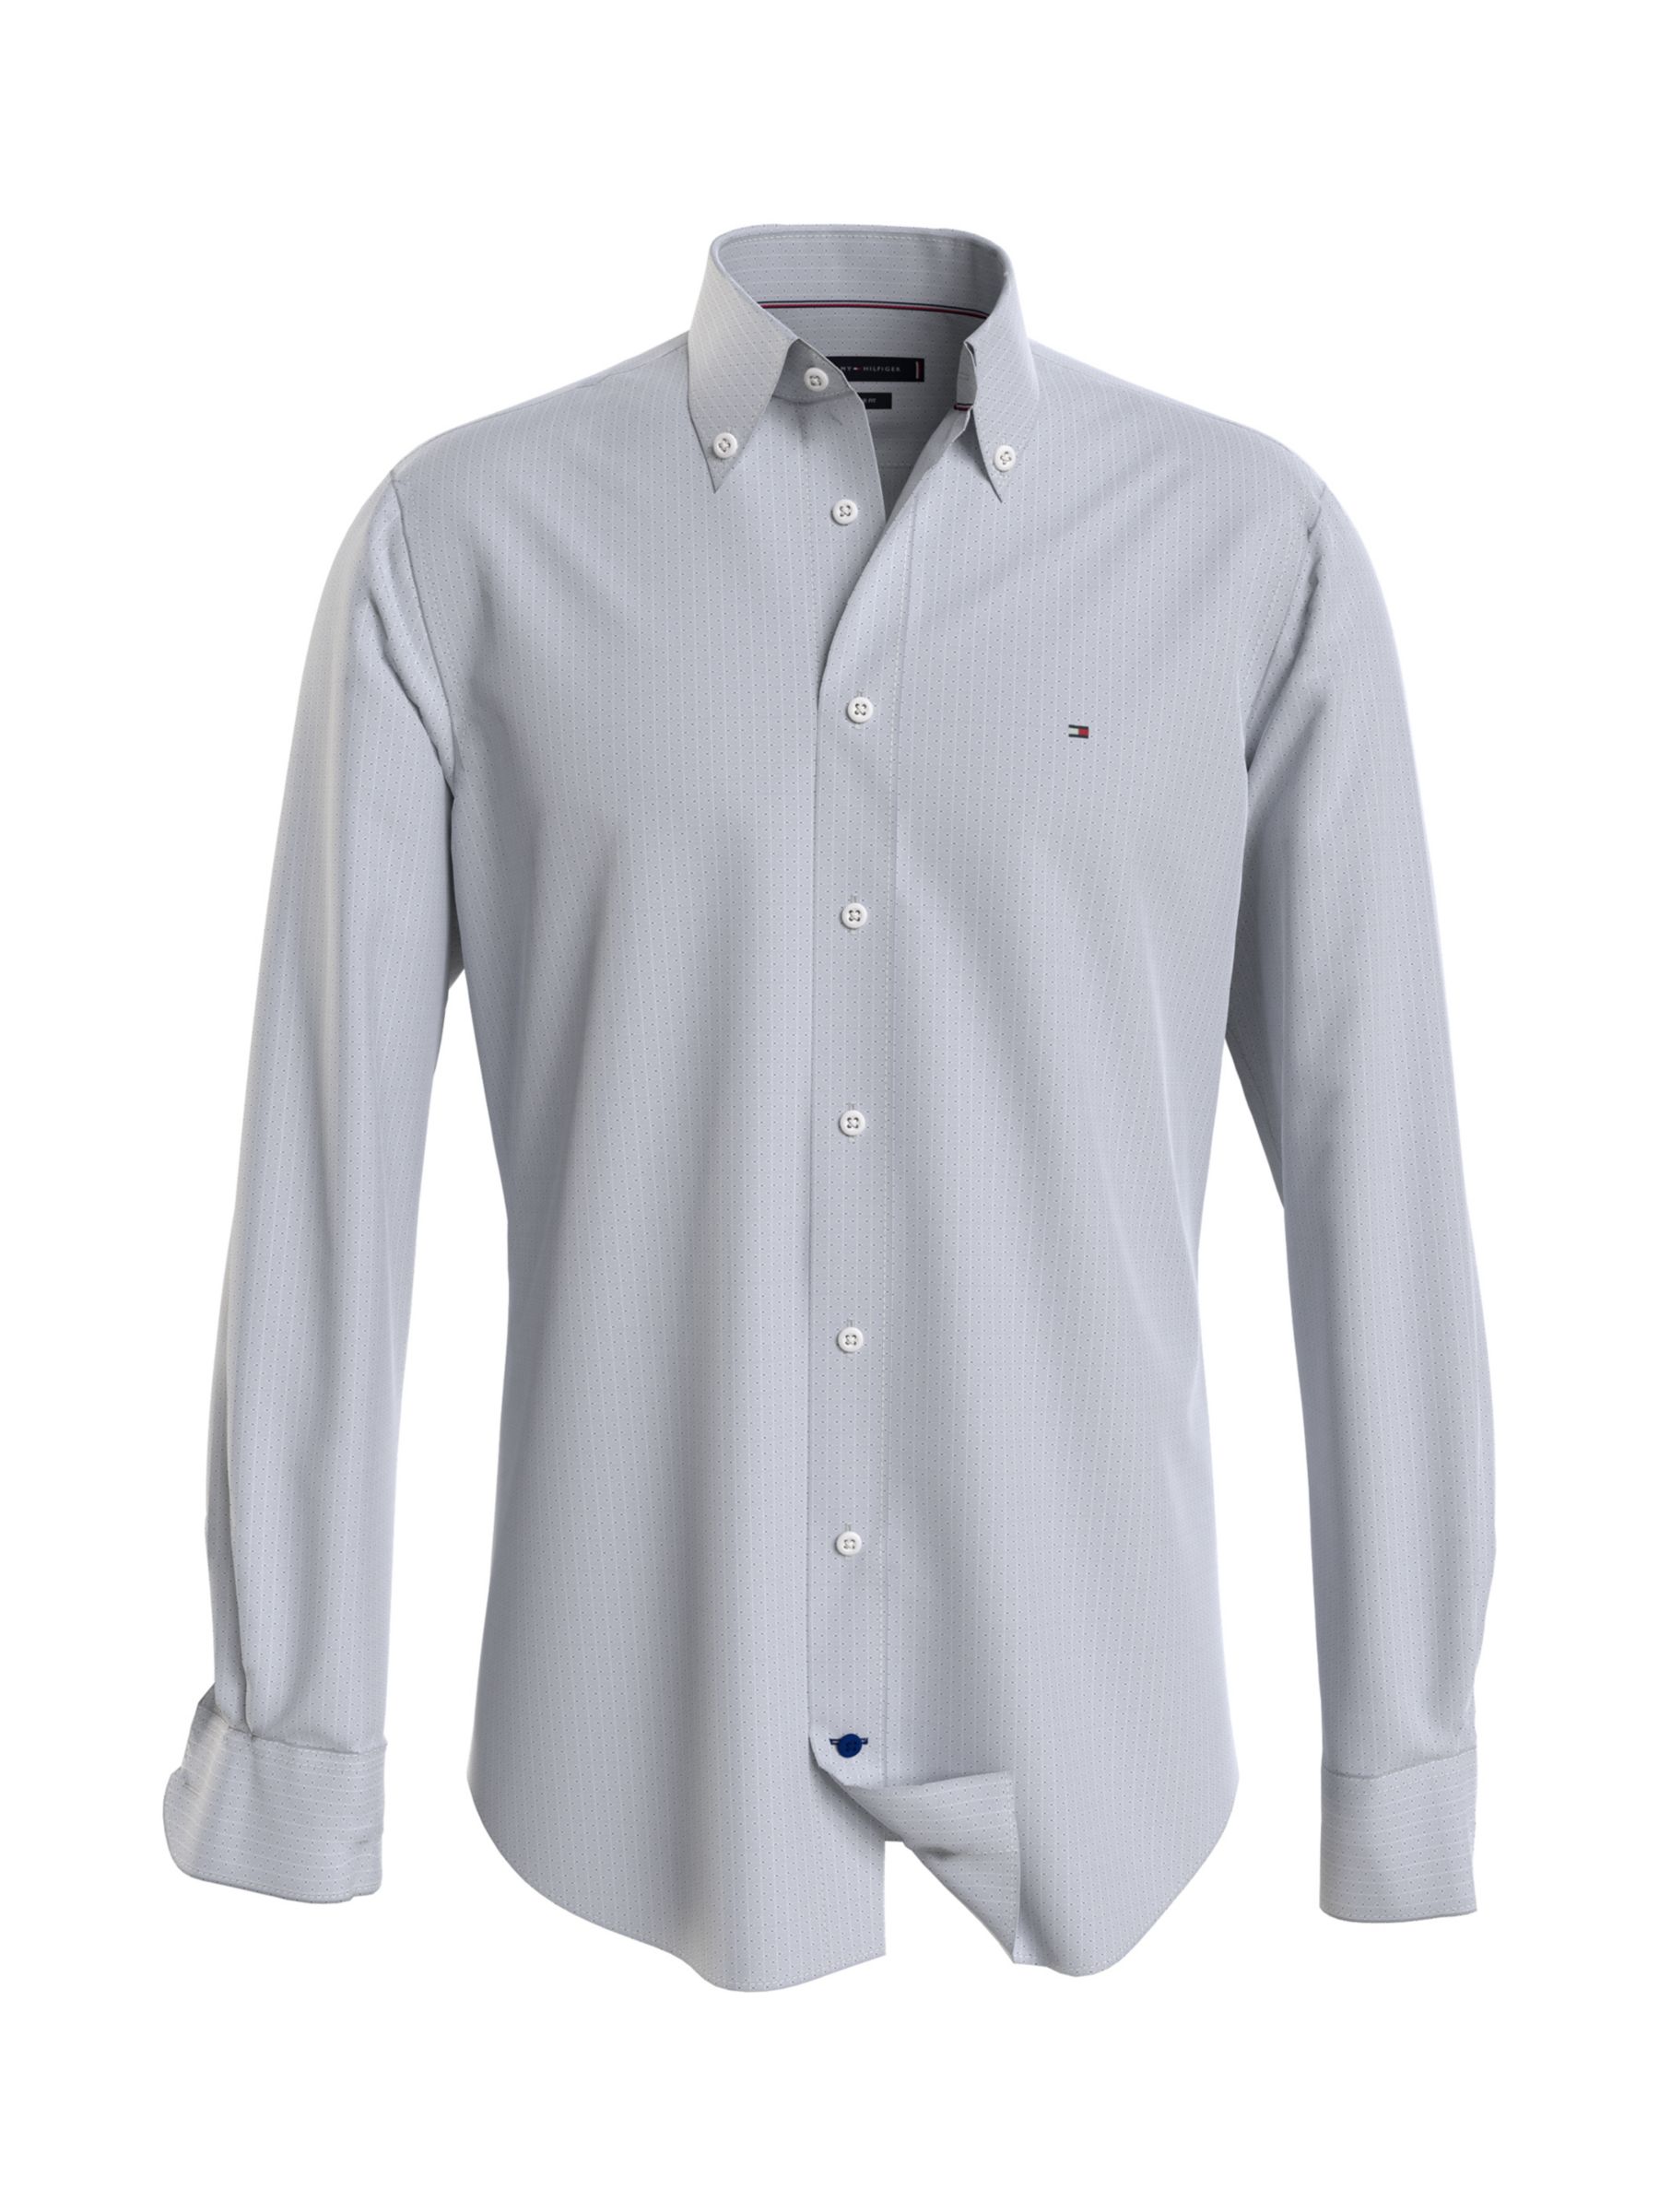 Tommy Hilfiger Dobby Cotton Oxford Shirt, Th Navy/White, 37